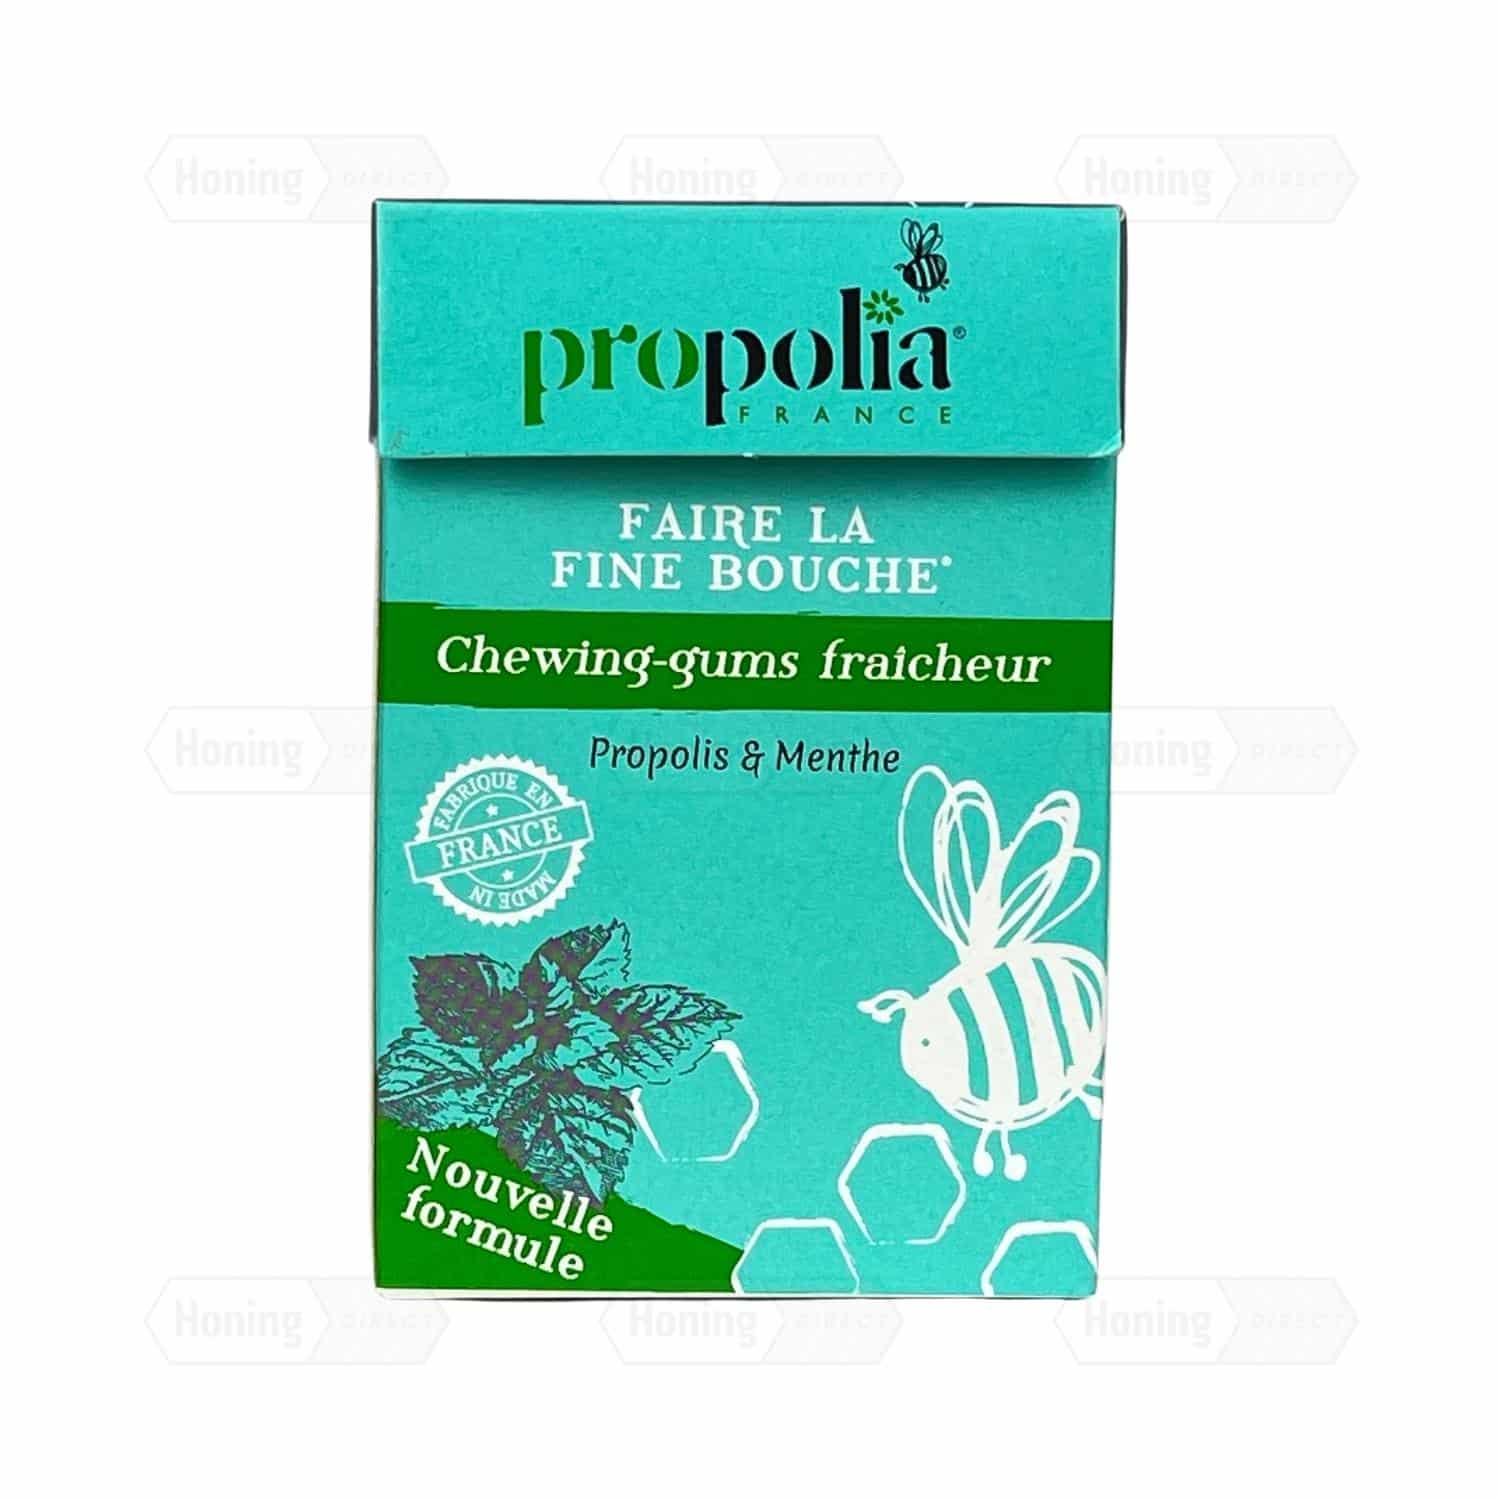 Natuurlijke kauwgom met propolis en mint